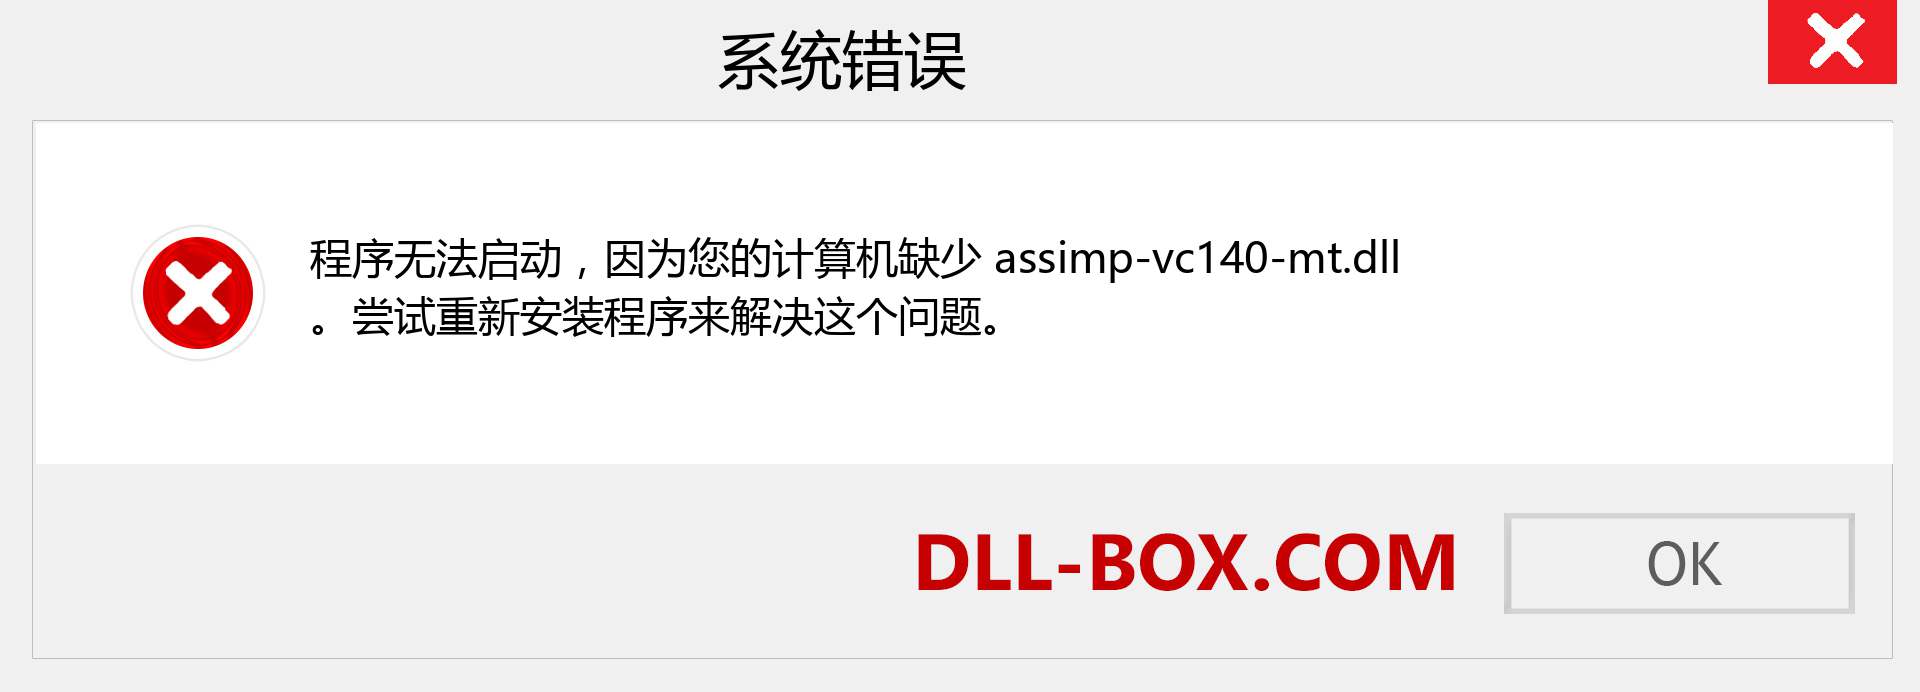 assimp-vc140-mt.dll 文件丢失？。 适用于 Windows 7、8、10 的下载 - 修复 Windows、照片、图像上的 assimp-vc140-mt dll 丢失错误